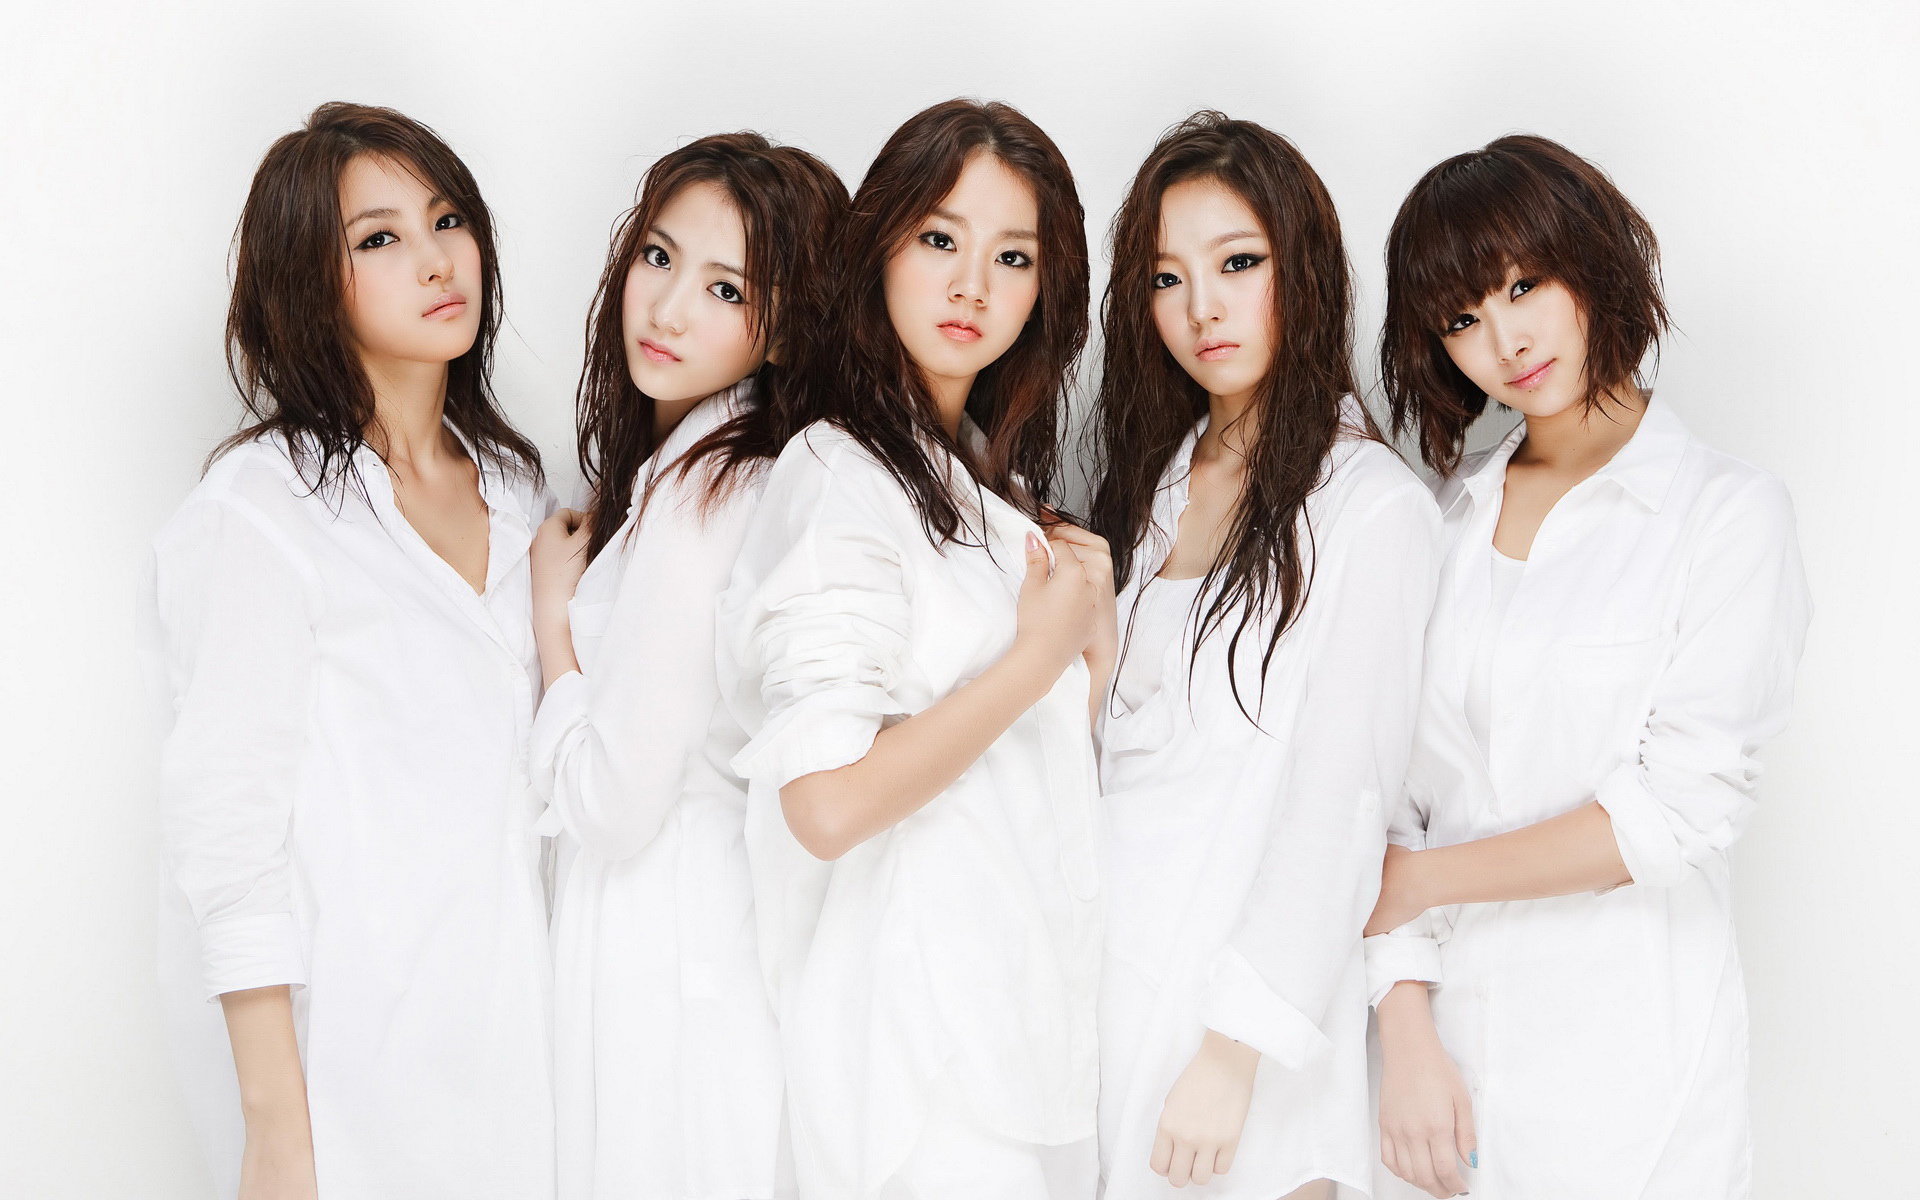 【个人向】喜欢的韩国女团歌曲_明星_娱乐_bilibili_哔哩哔哩